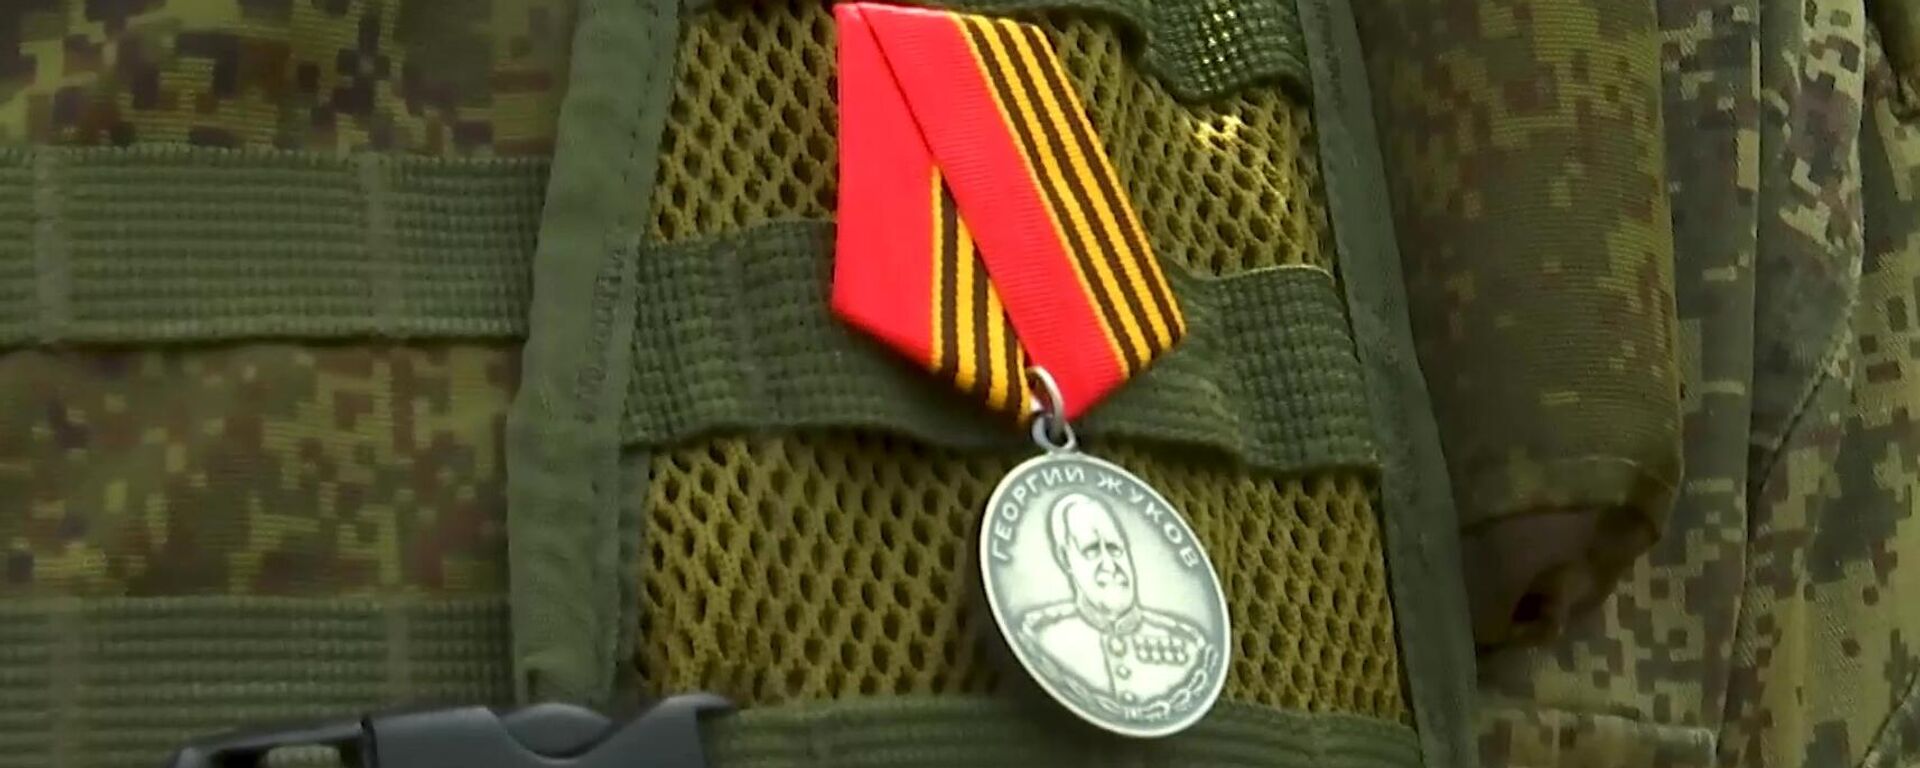 Medalha de Zhukov no peito de militar russo condecorado por coragem e heroísmo durante operação militar especial da Rússia na Ucrânia - Sputnik Brasil, 1920, 16.05.2022